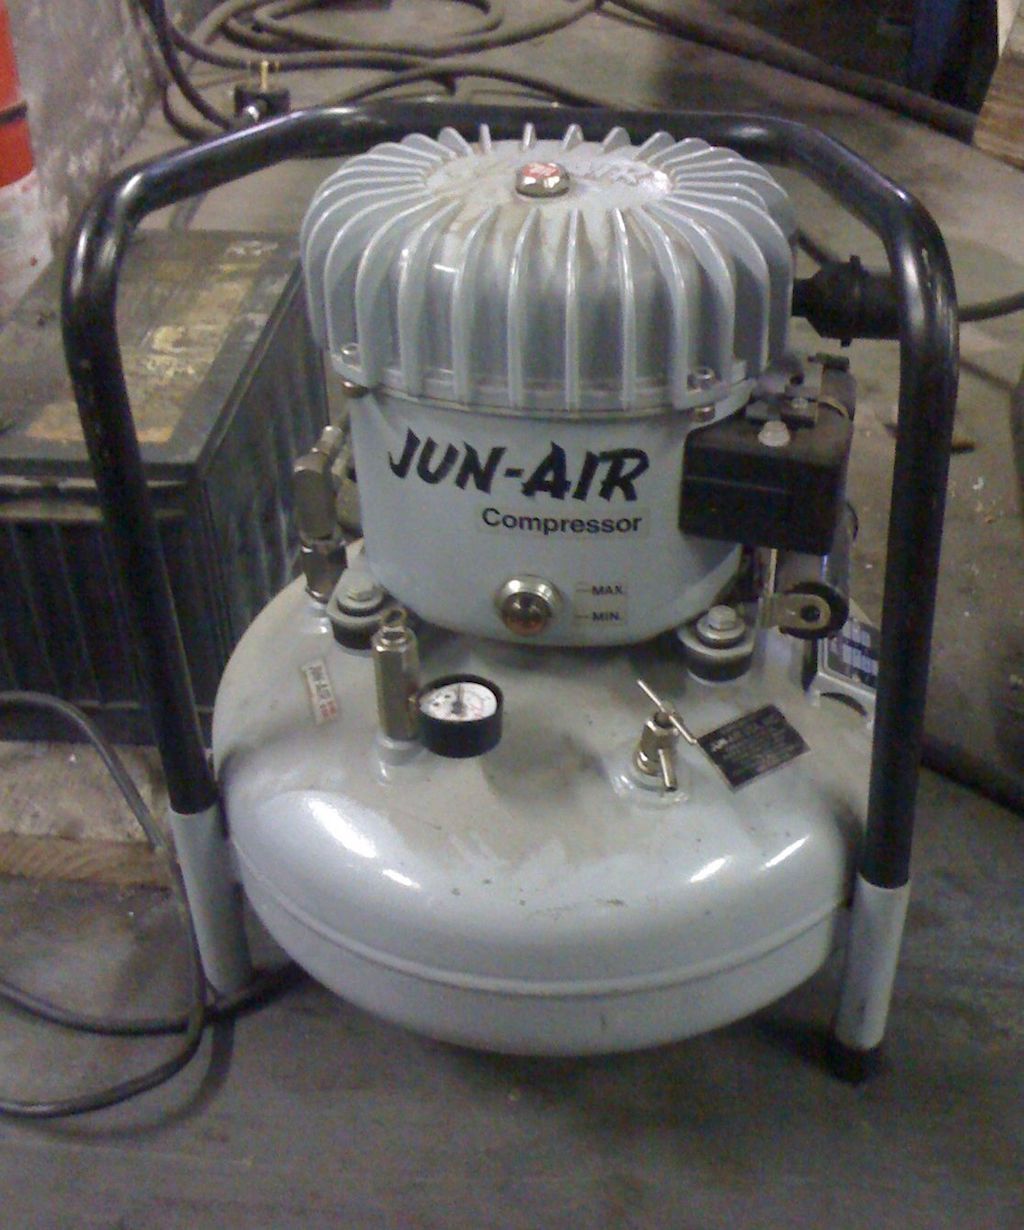 Whisper-Quiet Jun-Air Air Compressor Model 6-S